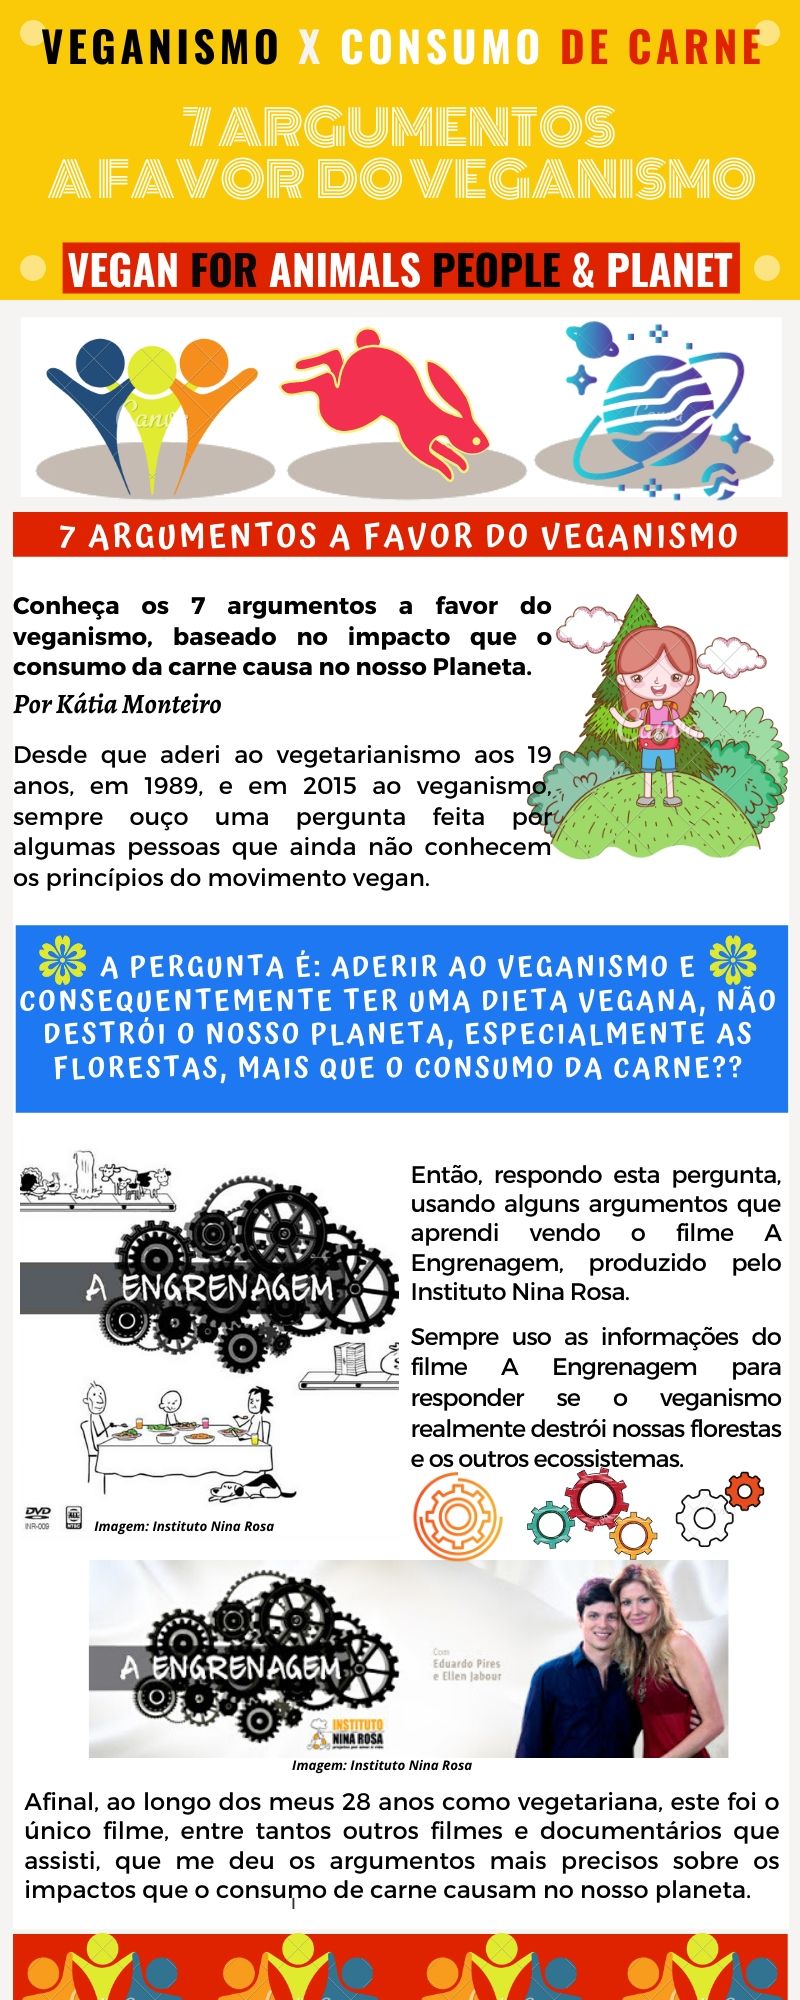 Infografico 7 Argumentos A Favor Do Veganismo - Argumentos que comprovam que o Veganismo é um movimento de libertação animal, saudável e sustentável.